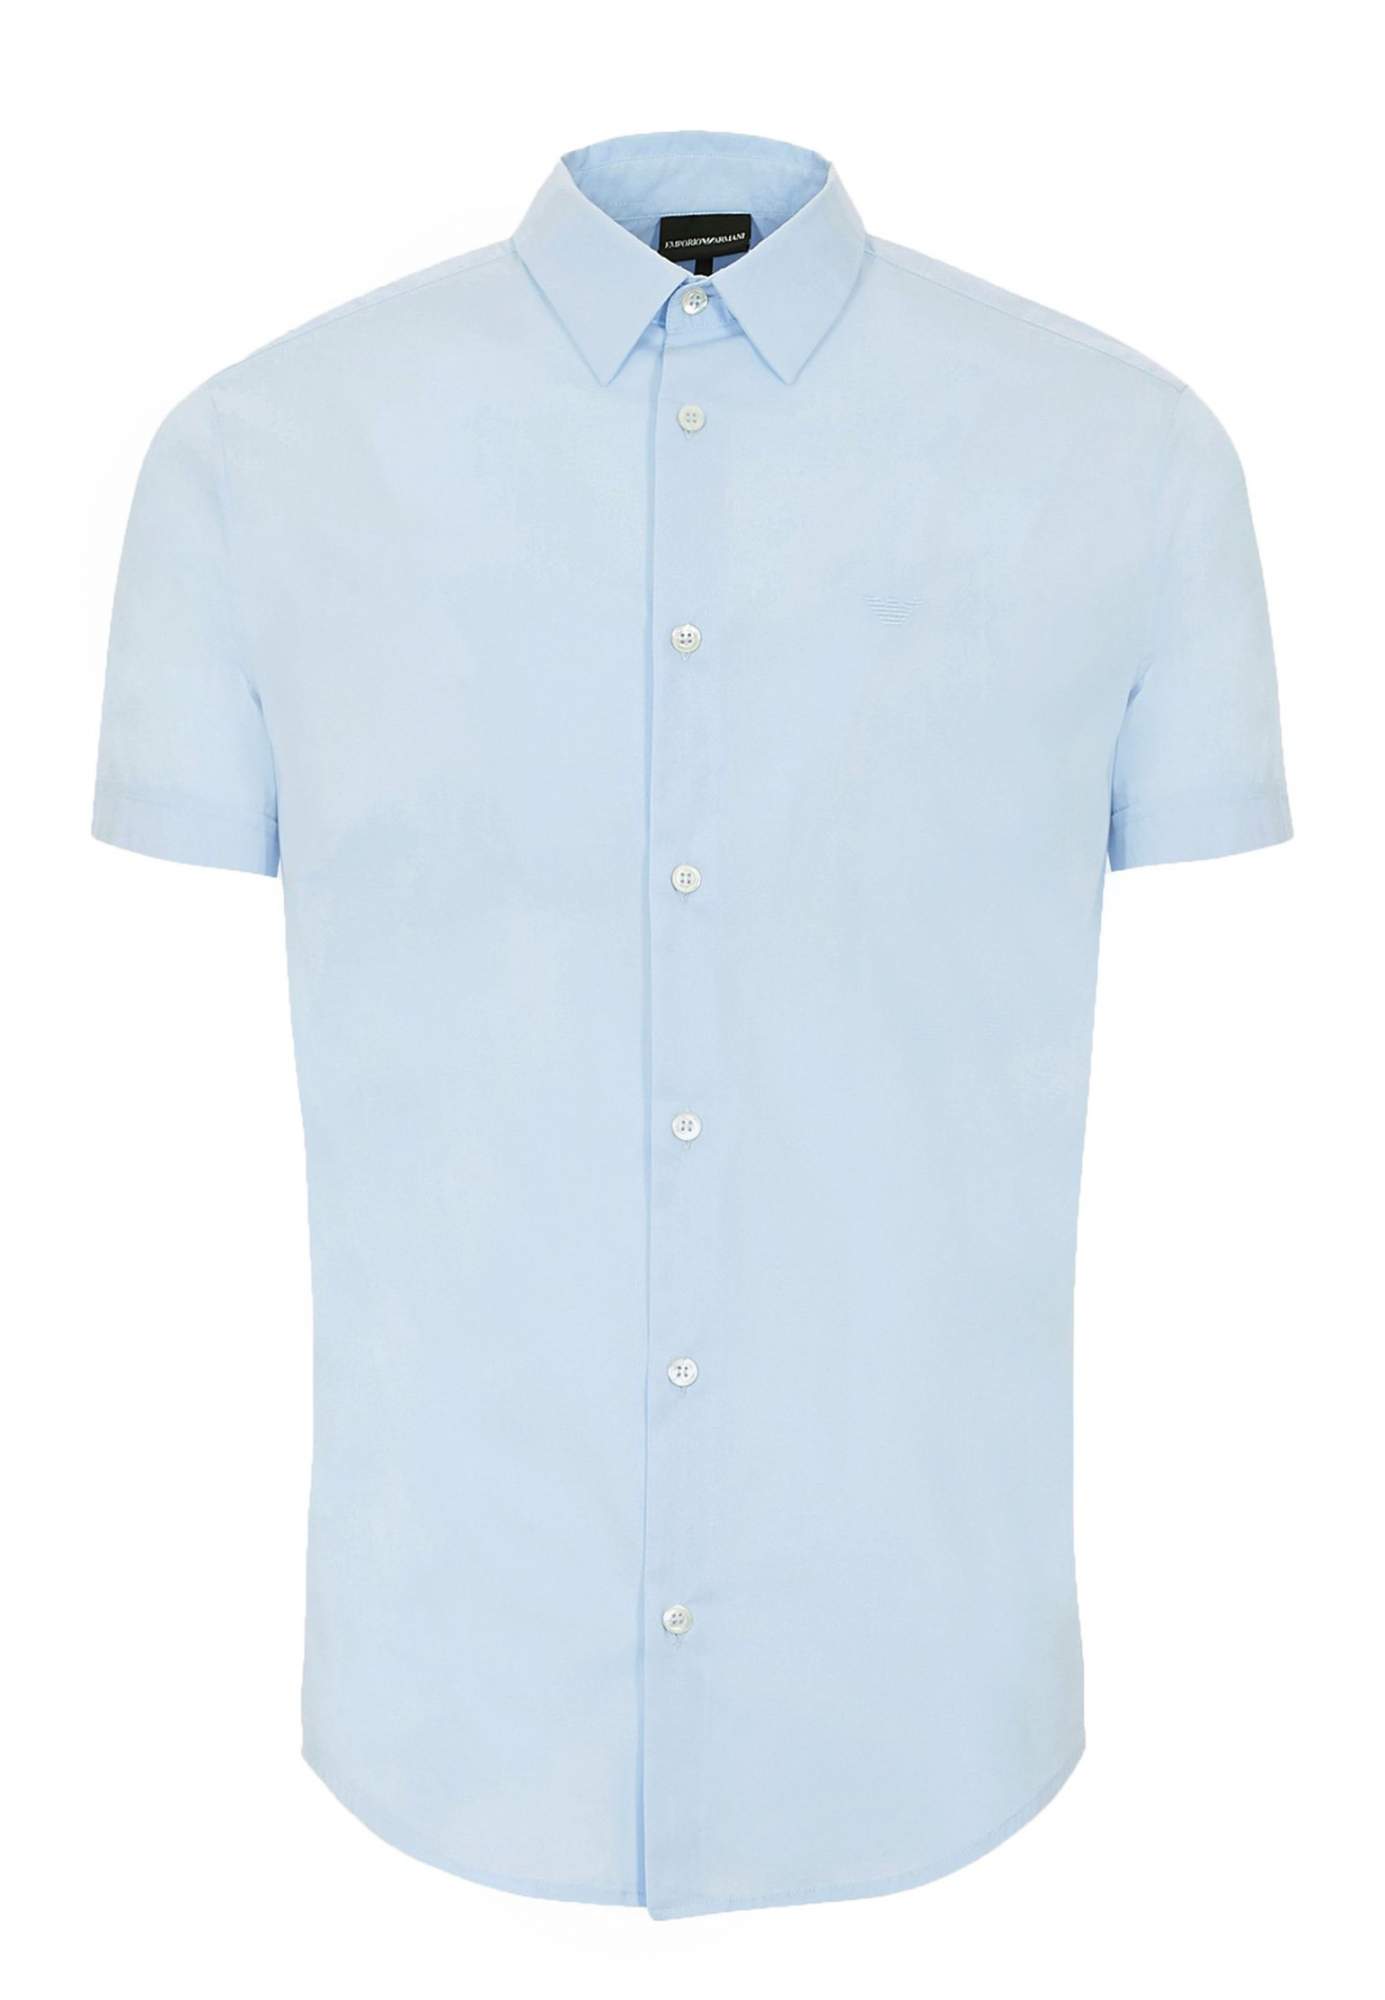 Рубашка мужская Emporio Armani 126902 голубая L